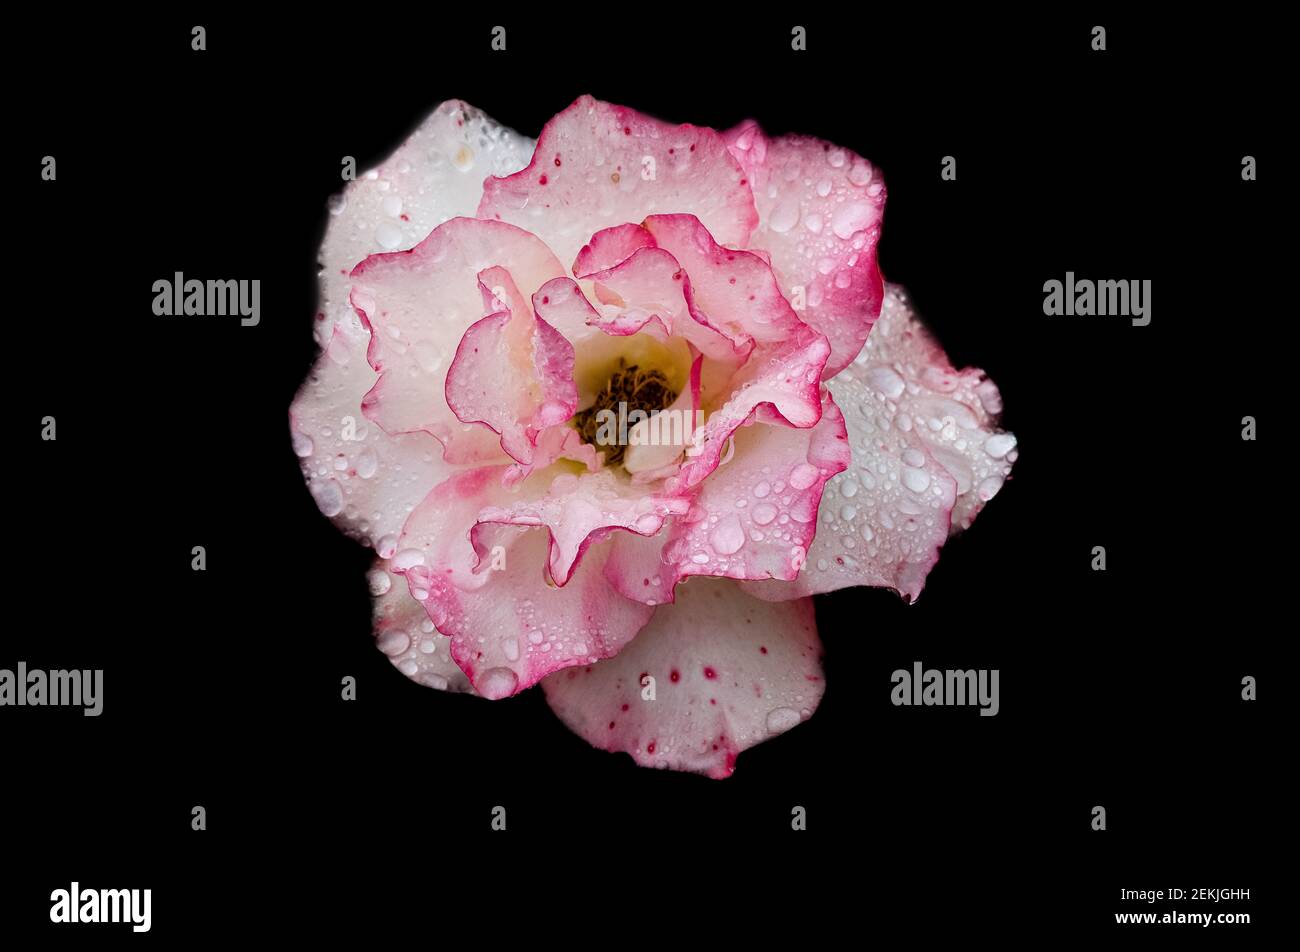 Tête rose et blanche recouverte de rosée sur fond noir Banque D'Images